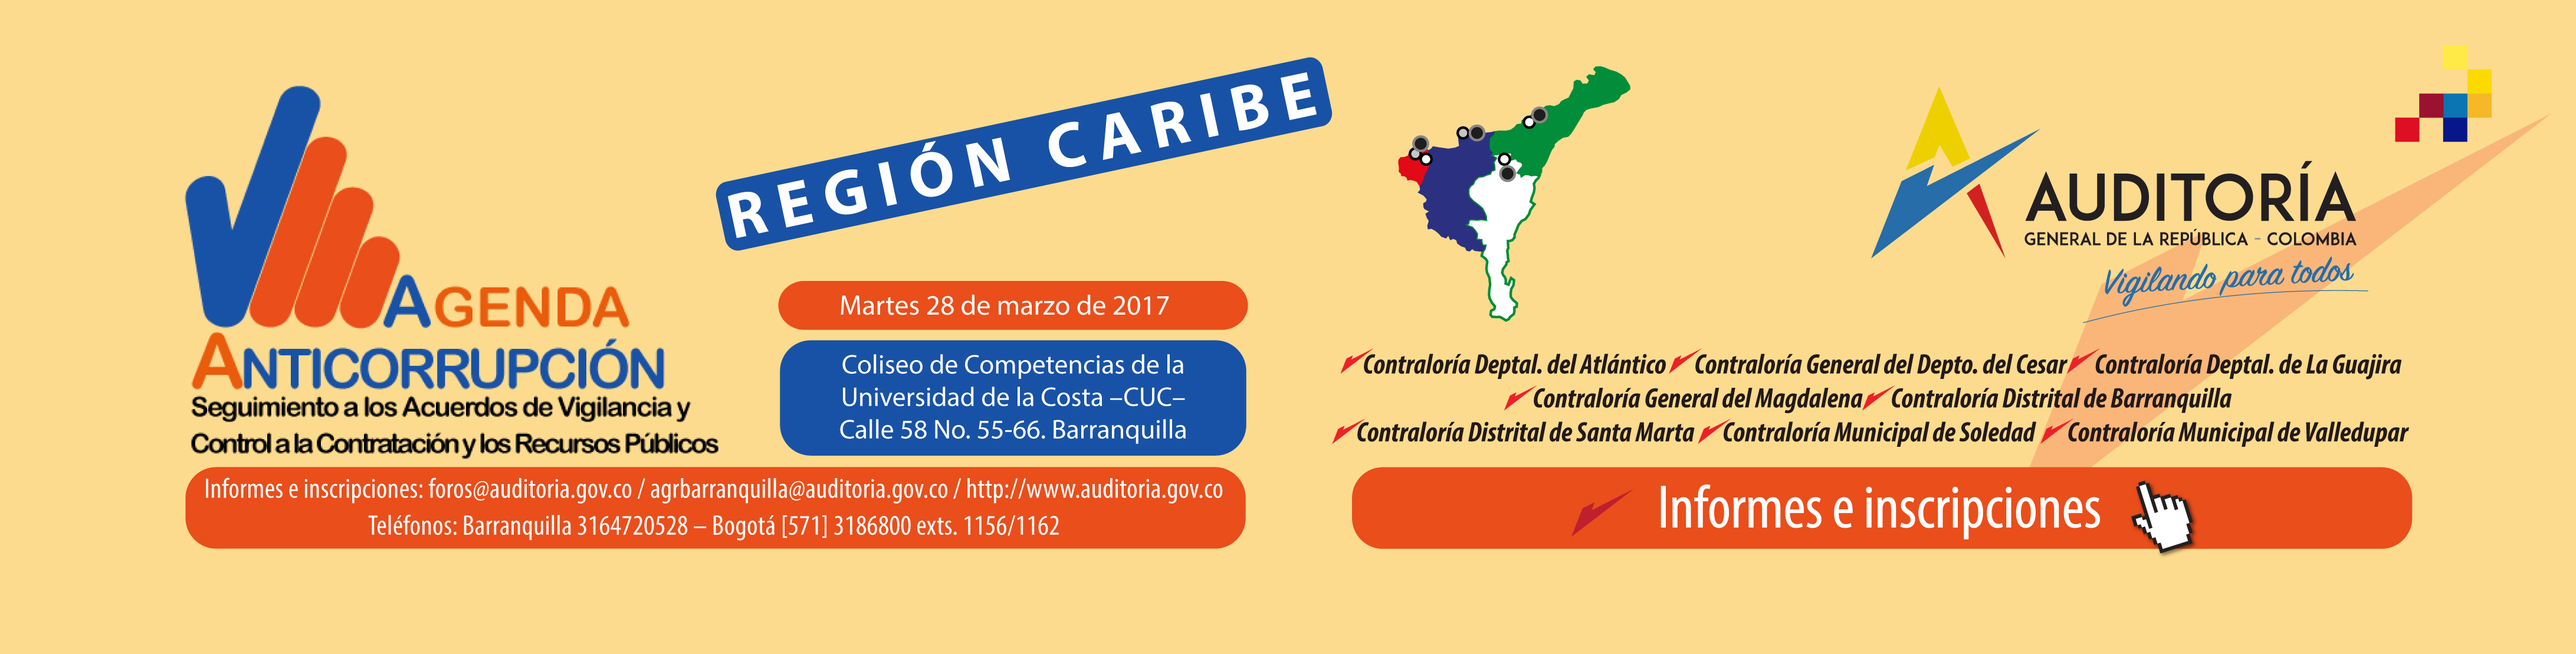 Agenda Anticorrupción - Región Caribe